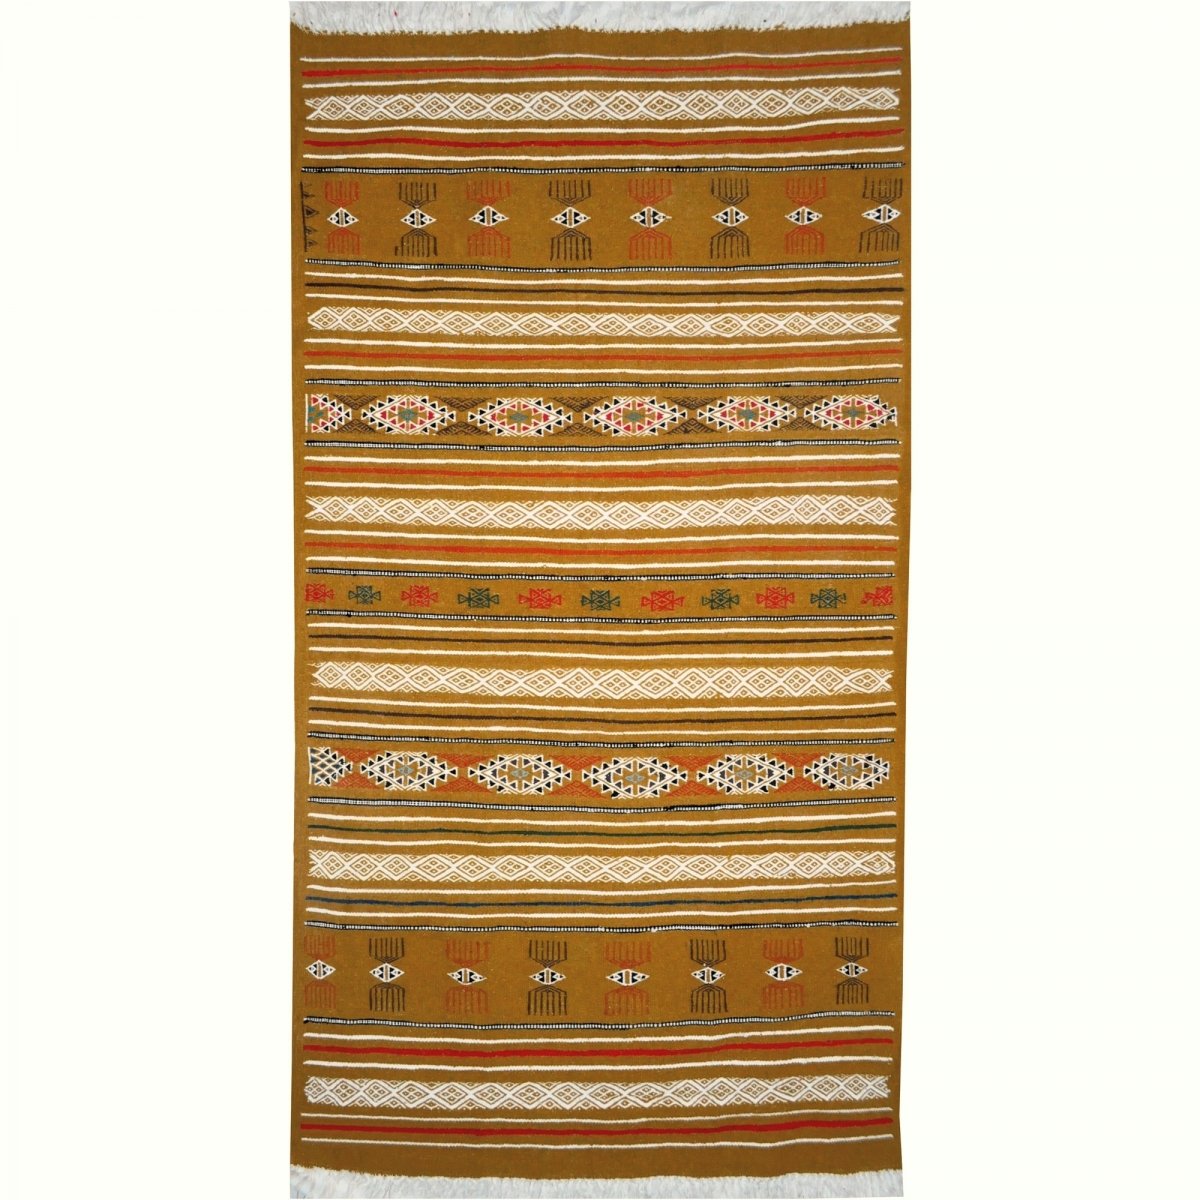 Berber tapijt Tapijt Kilim Lamta 100x200 Jeel (Handgeweven, Wol, Tunesië) Tunesisch kilimdeken, Marokkaanse stijl. Rechthoekig w